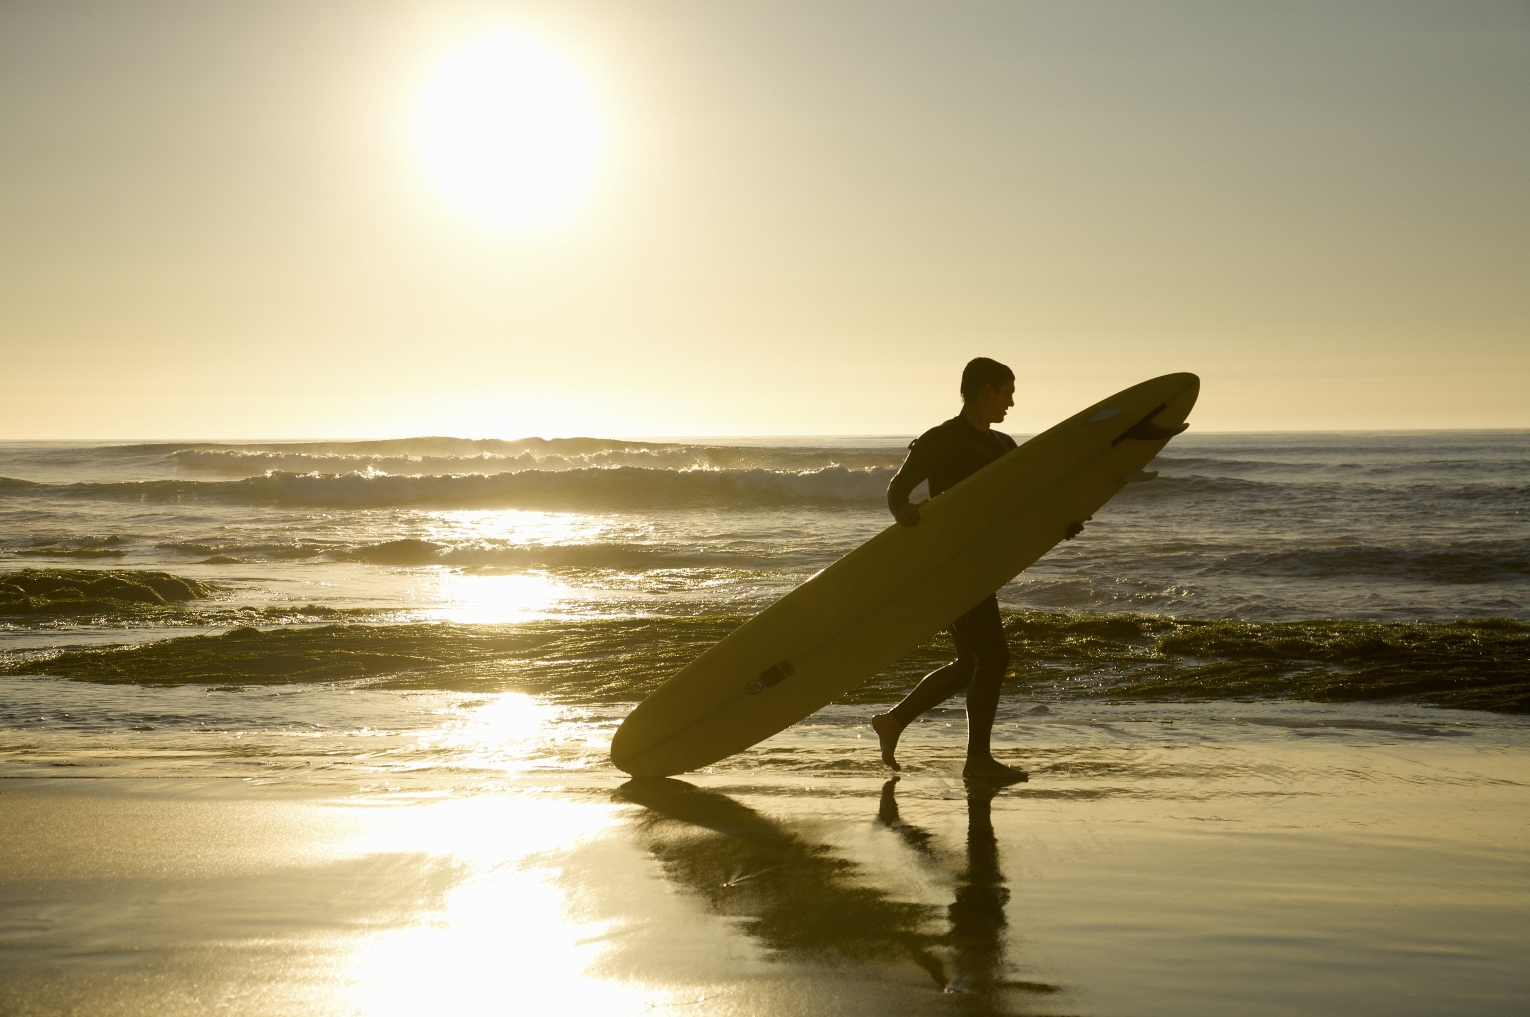 Surfing in San Diego